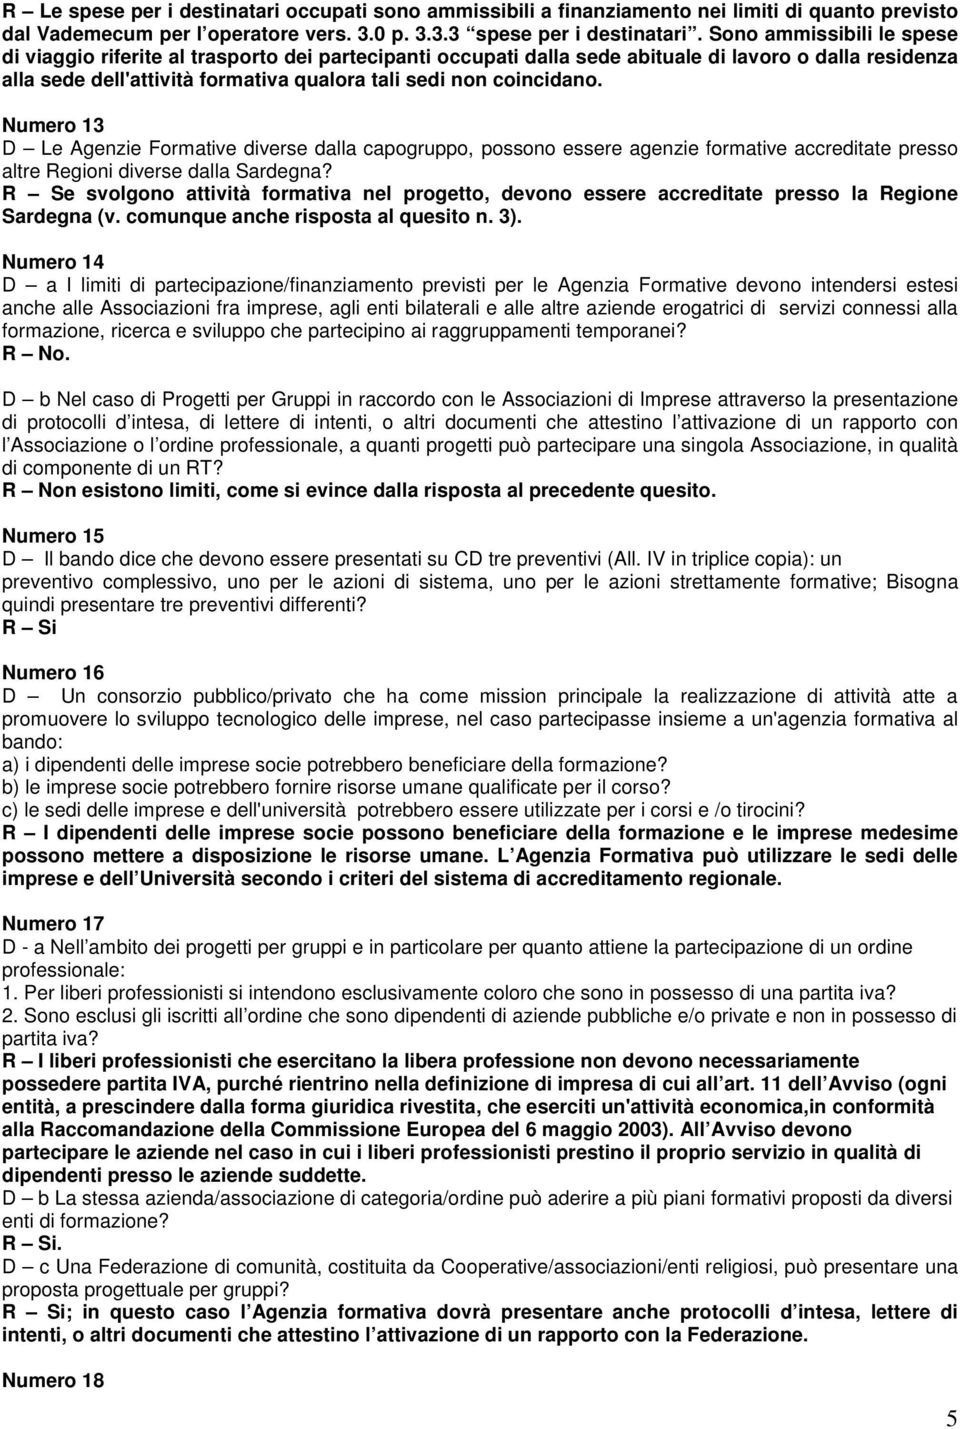 Numero 13 D Le Agenzie Formative diverse dalla capogruppo, possono essere agenzie formative accreditate presso altre Regioni diverse dalla Sardegna?